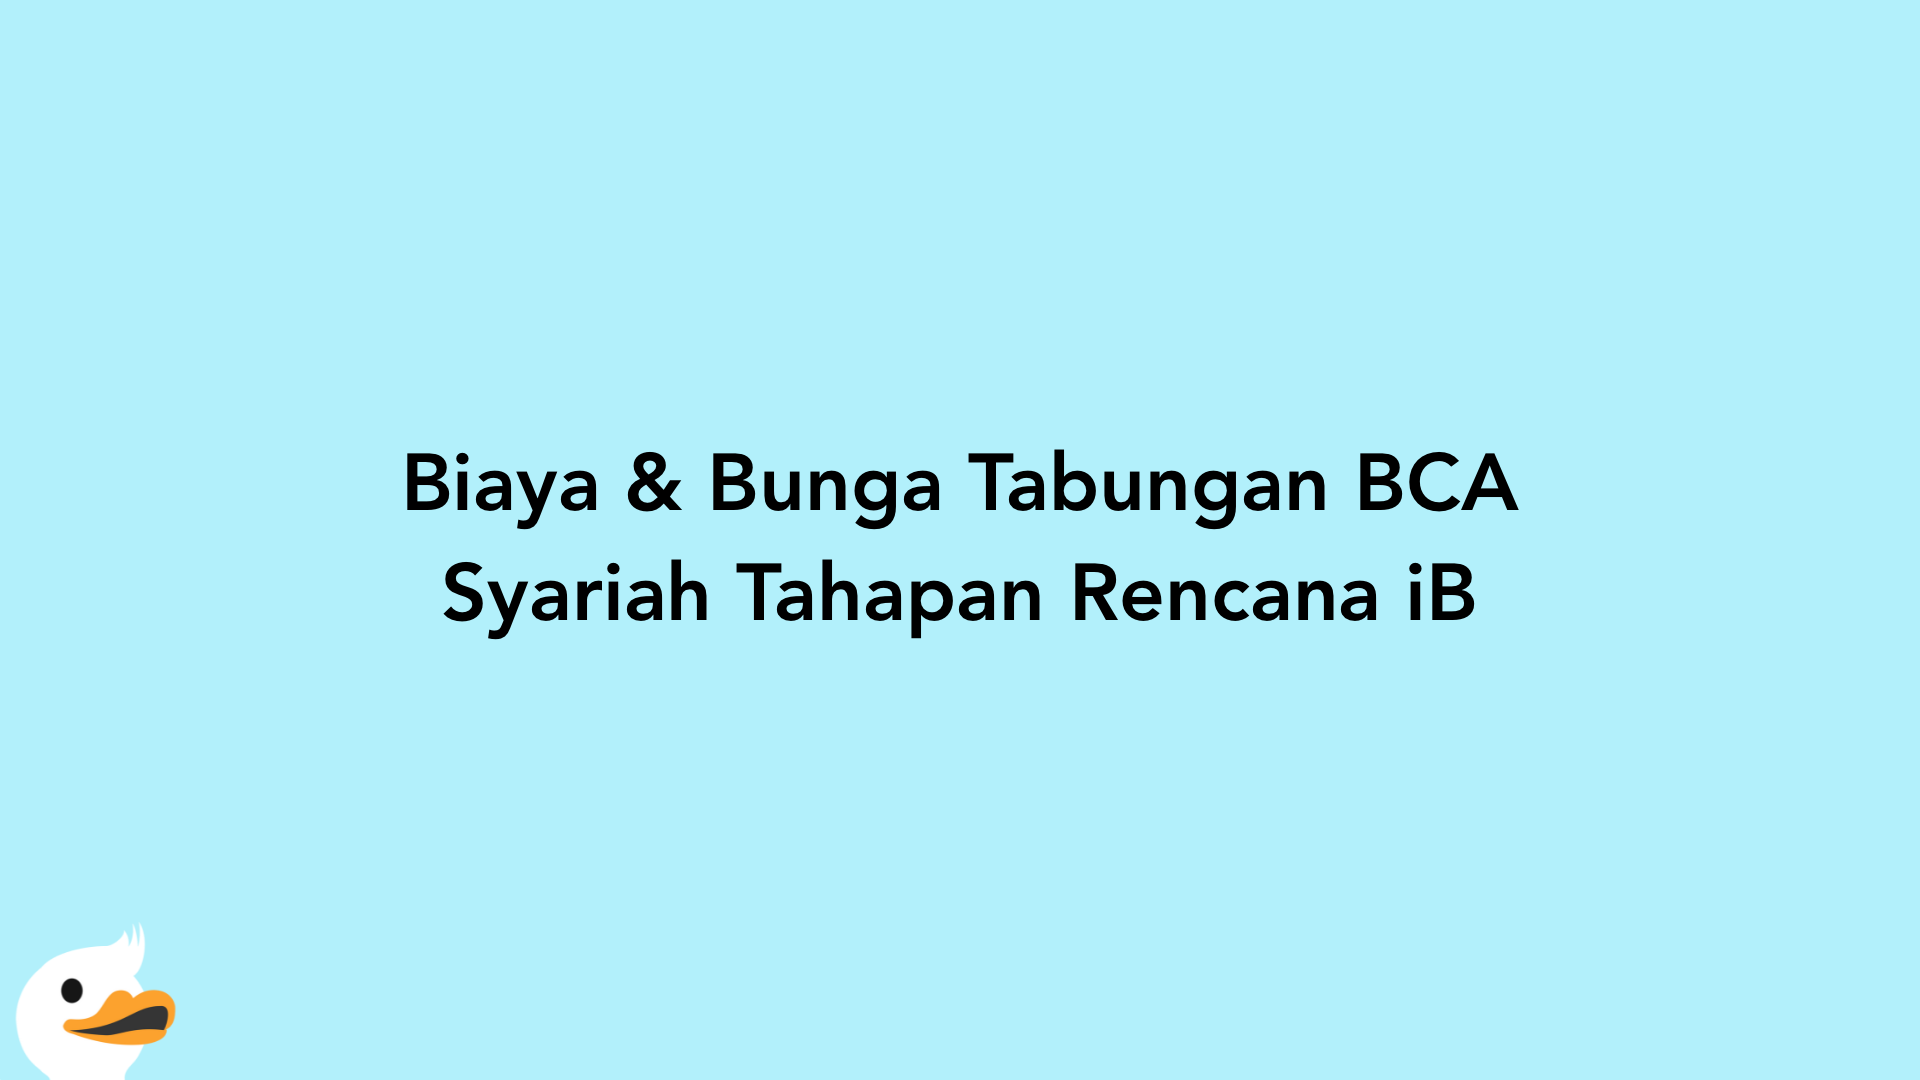 Biaya & Bunga Tabungan BCA Syariah Tahapan Rencana iB